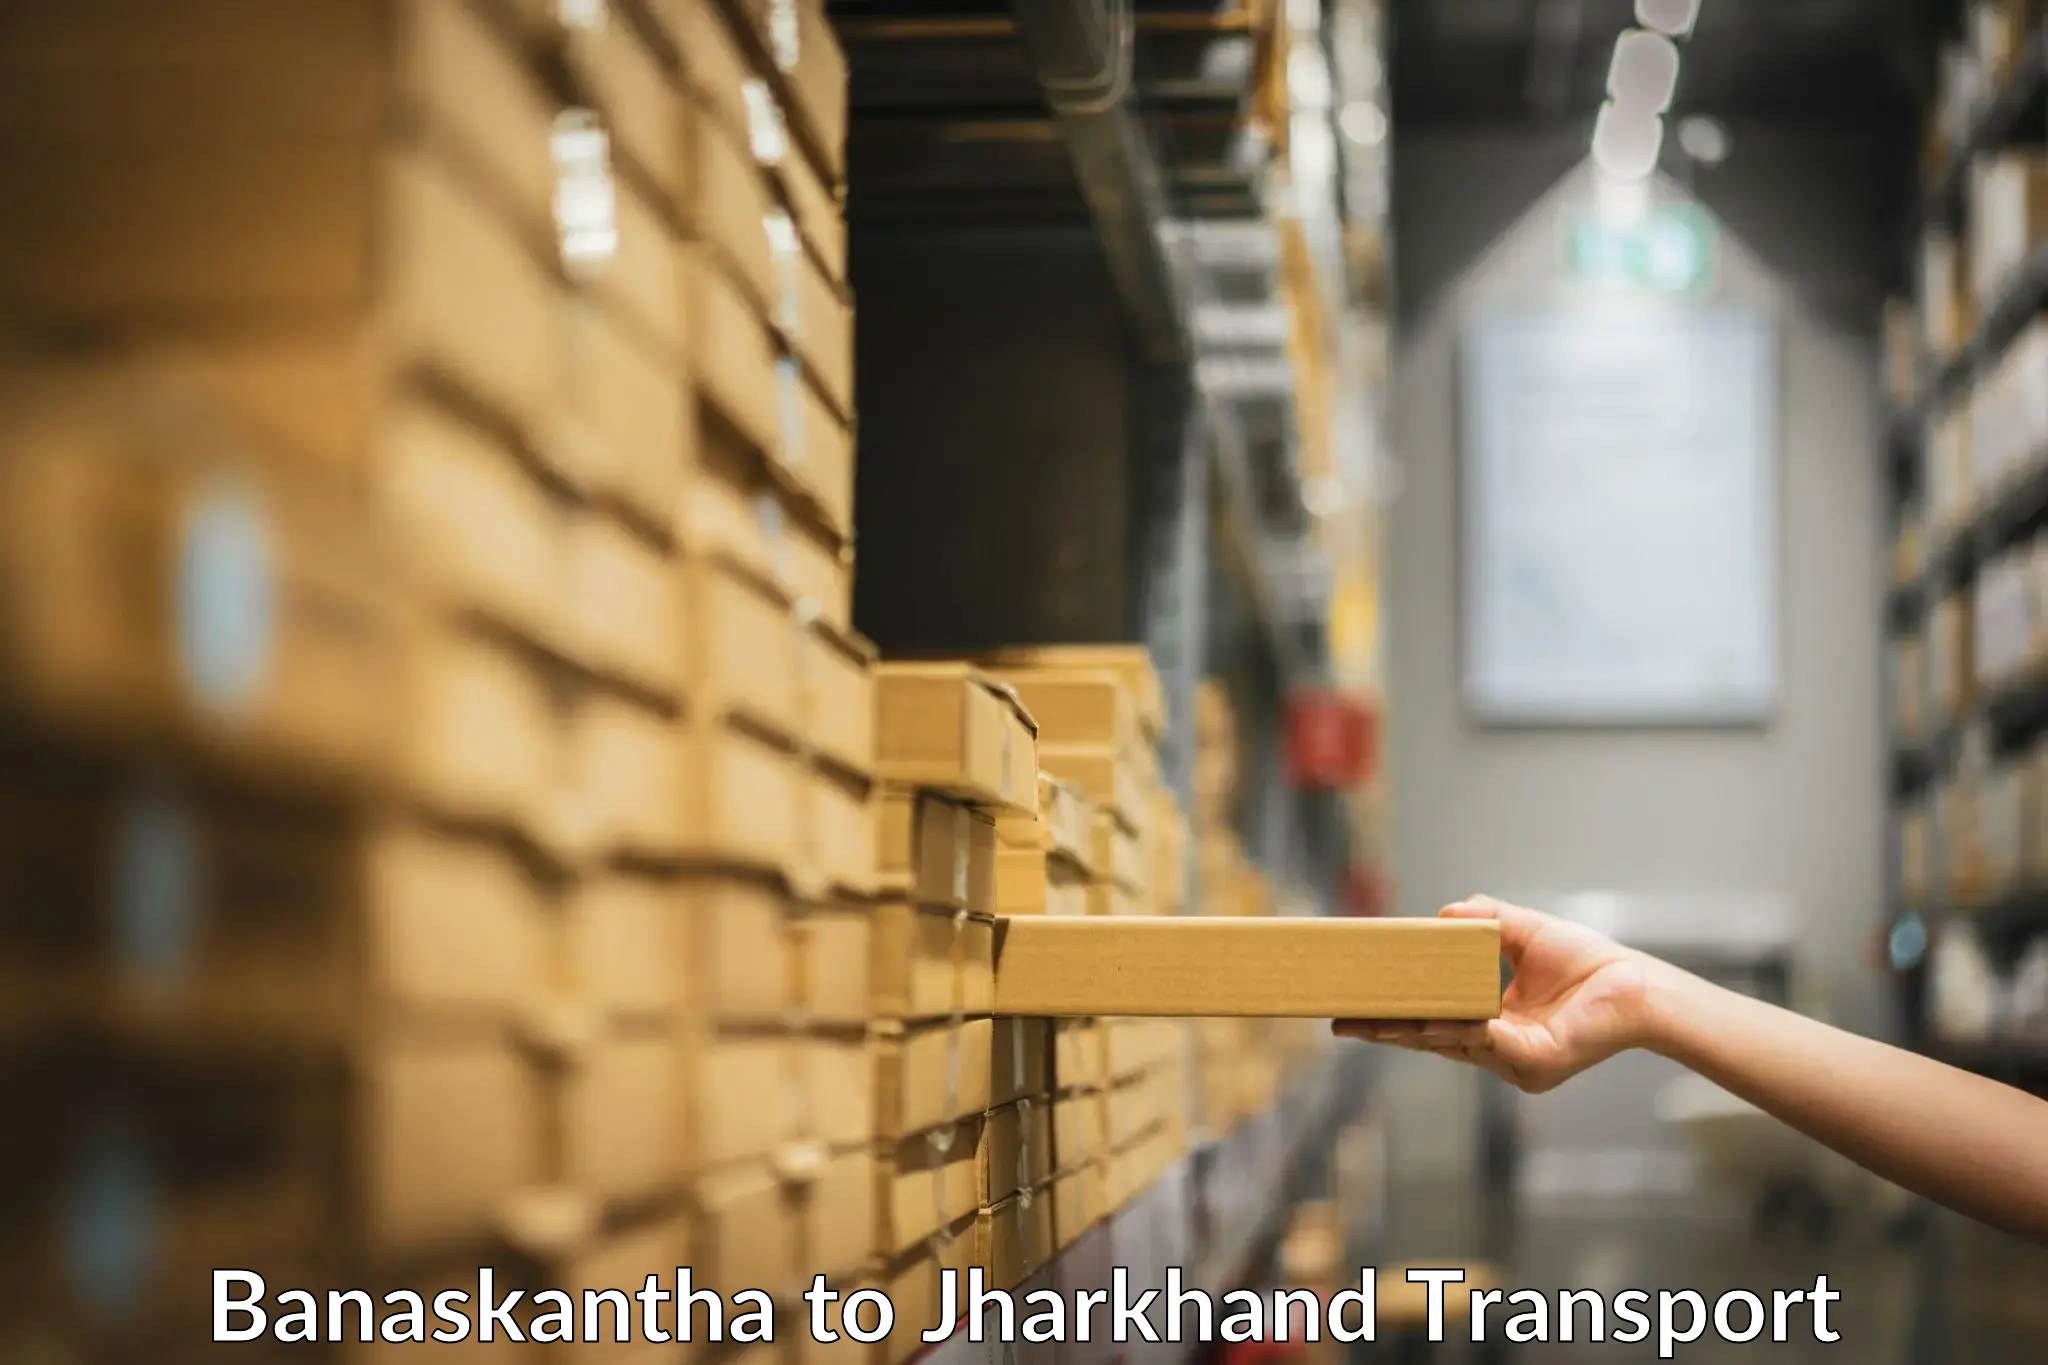 Lorry transport service Banaskantha to Peterbar